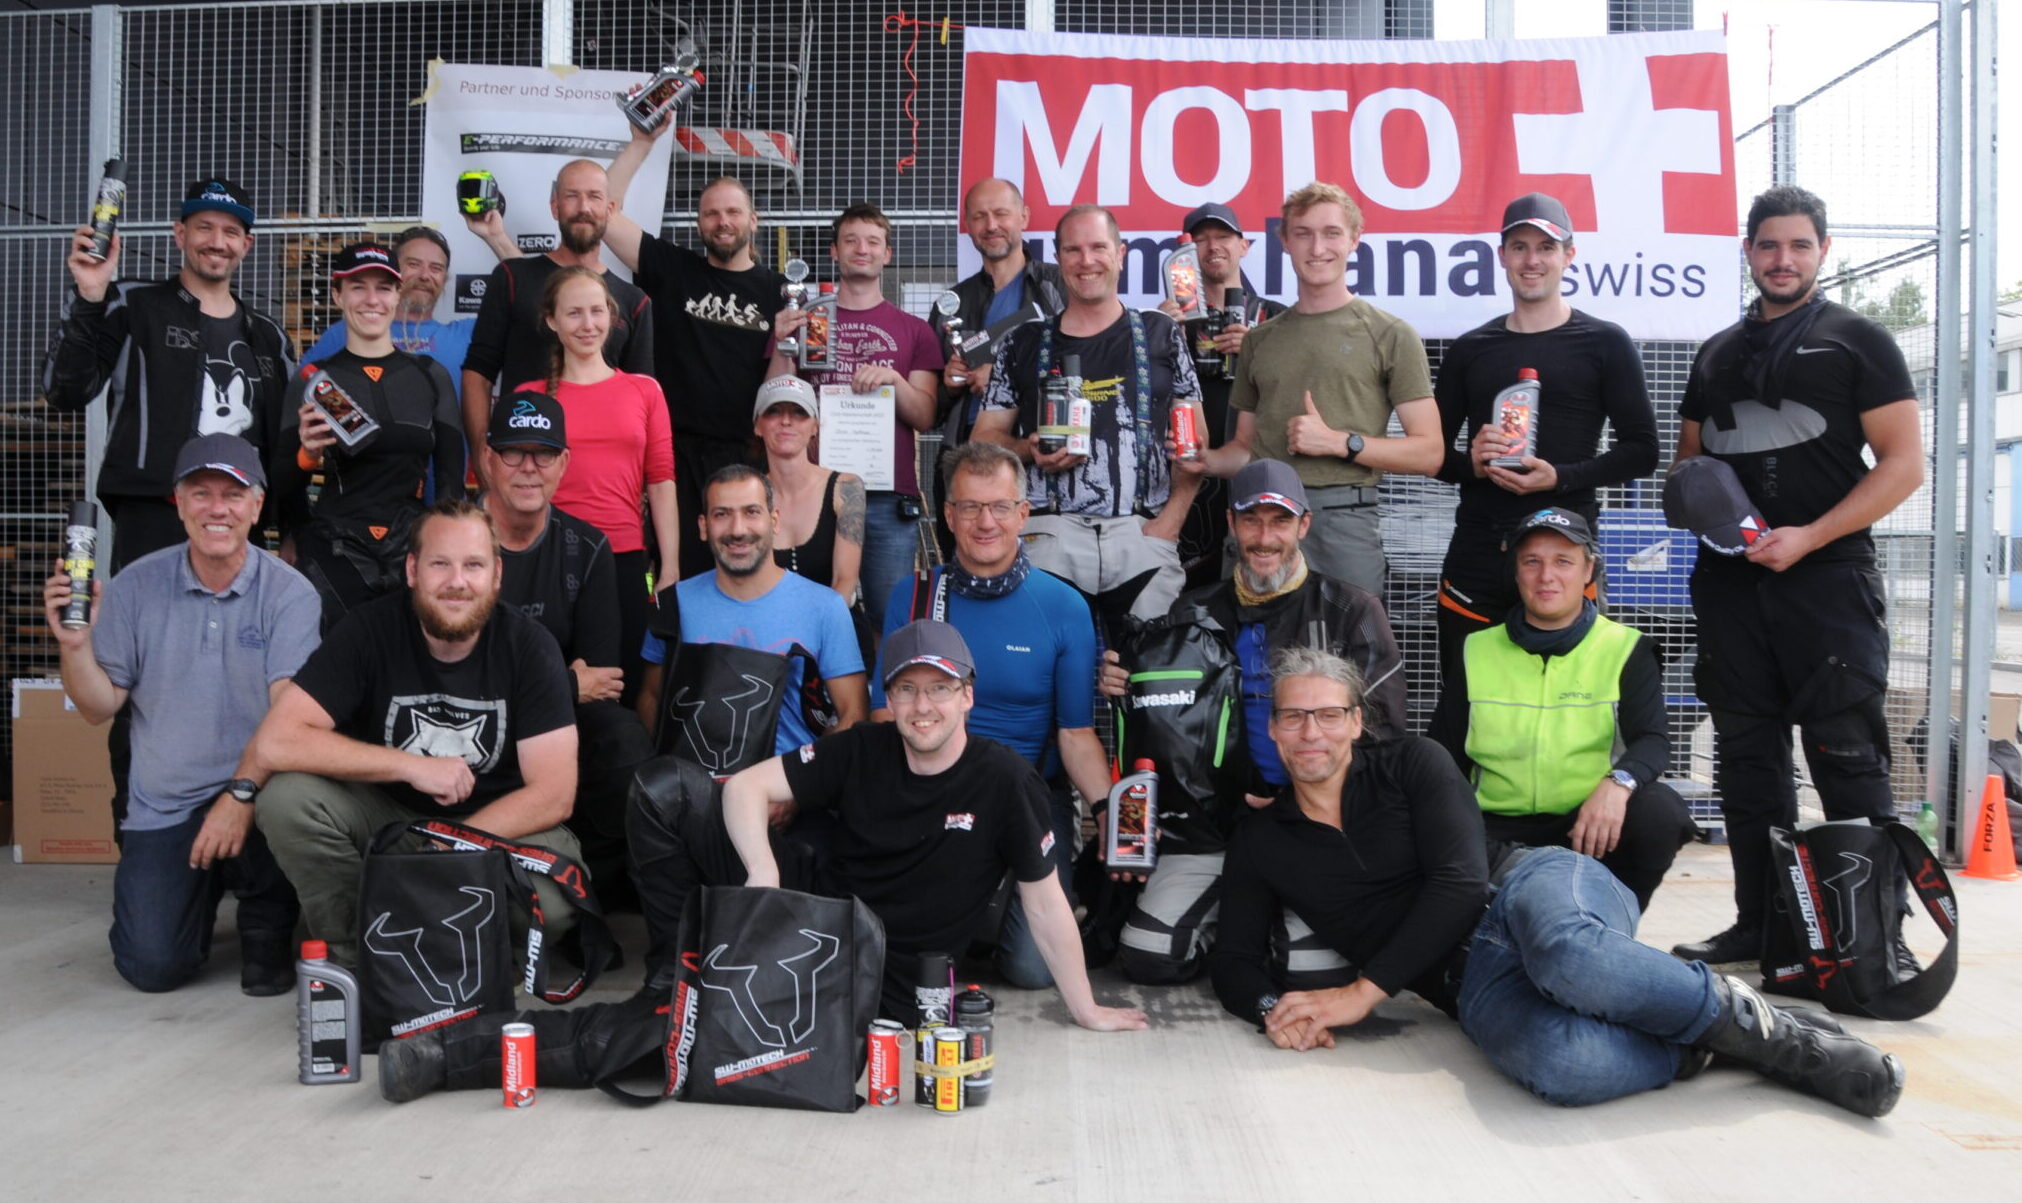 moto gymkhana swiss klubmeisterschaft 2022 schlieren gruppenfoto alle teilnehmer